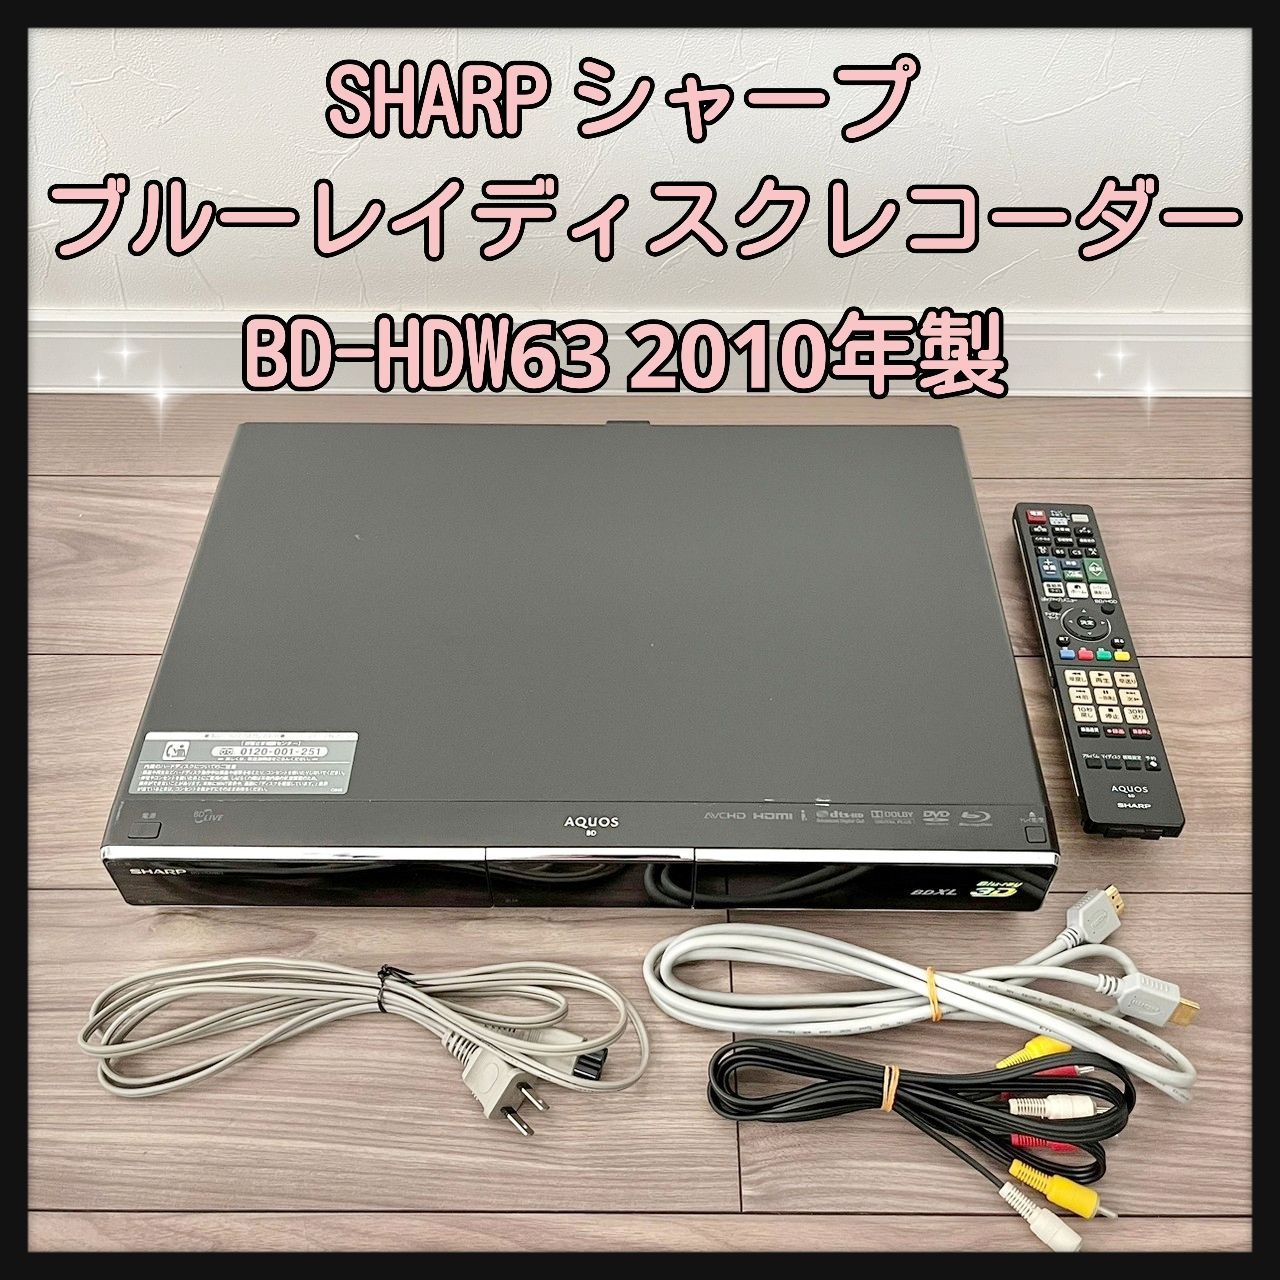 SHARP ブルーレイレコーダー AQUOS【BD-HDS63】◇内部清掃済み 